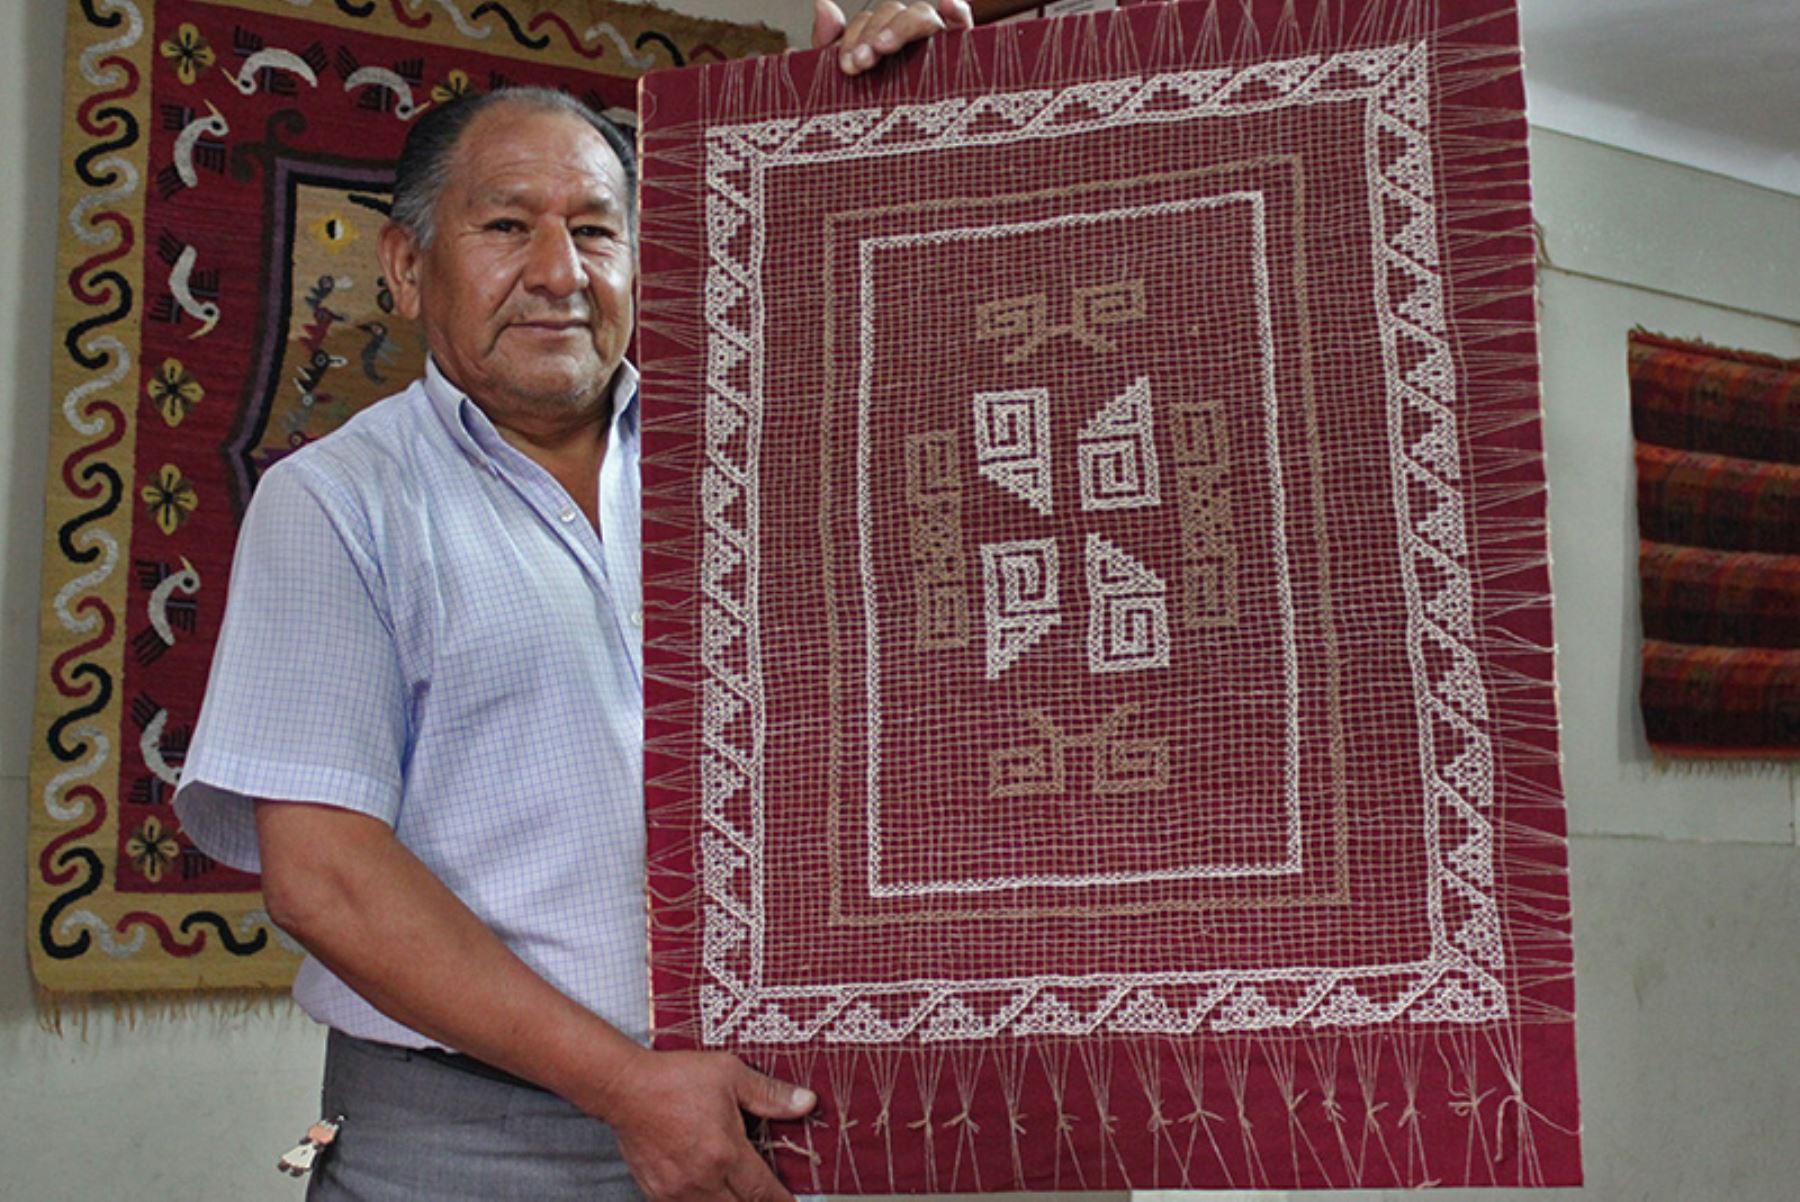 Alfonso Sulca Chávez es un maestro del arte textil que ha contribuido de manera trascendente al desarrollo de una escuela o tendencia estilística en el tejido tradicional ayacuchano.